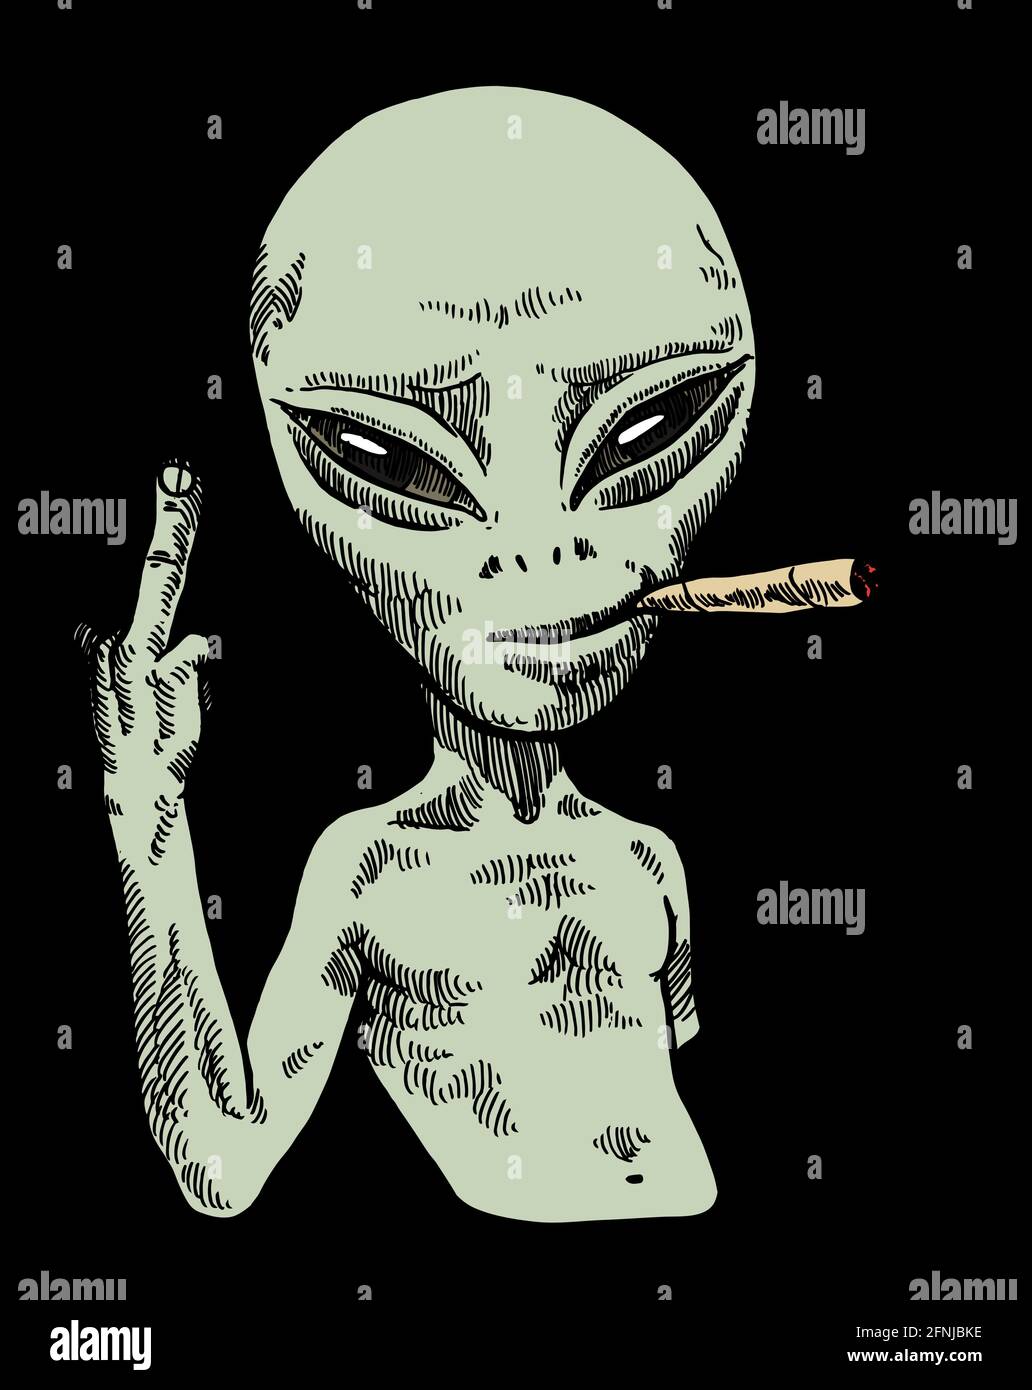 Alien Charakter Rauchen und zeigt einen Finger halb lächeln. Isolierter UFO-Charakter mit komplizierten Emotionen im Gesicht. Stock Vektor